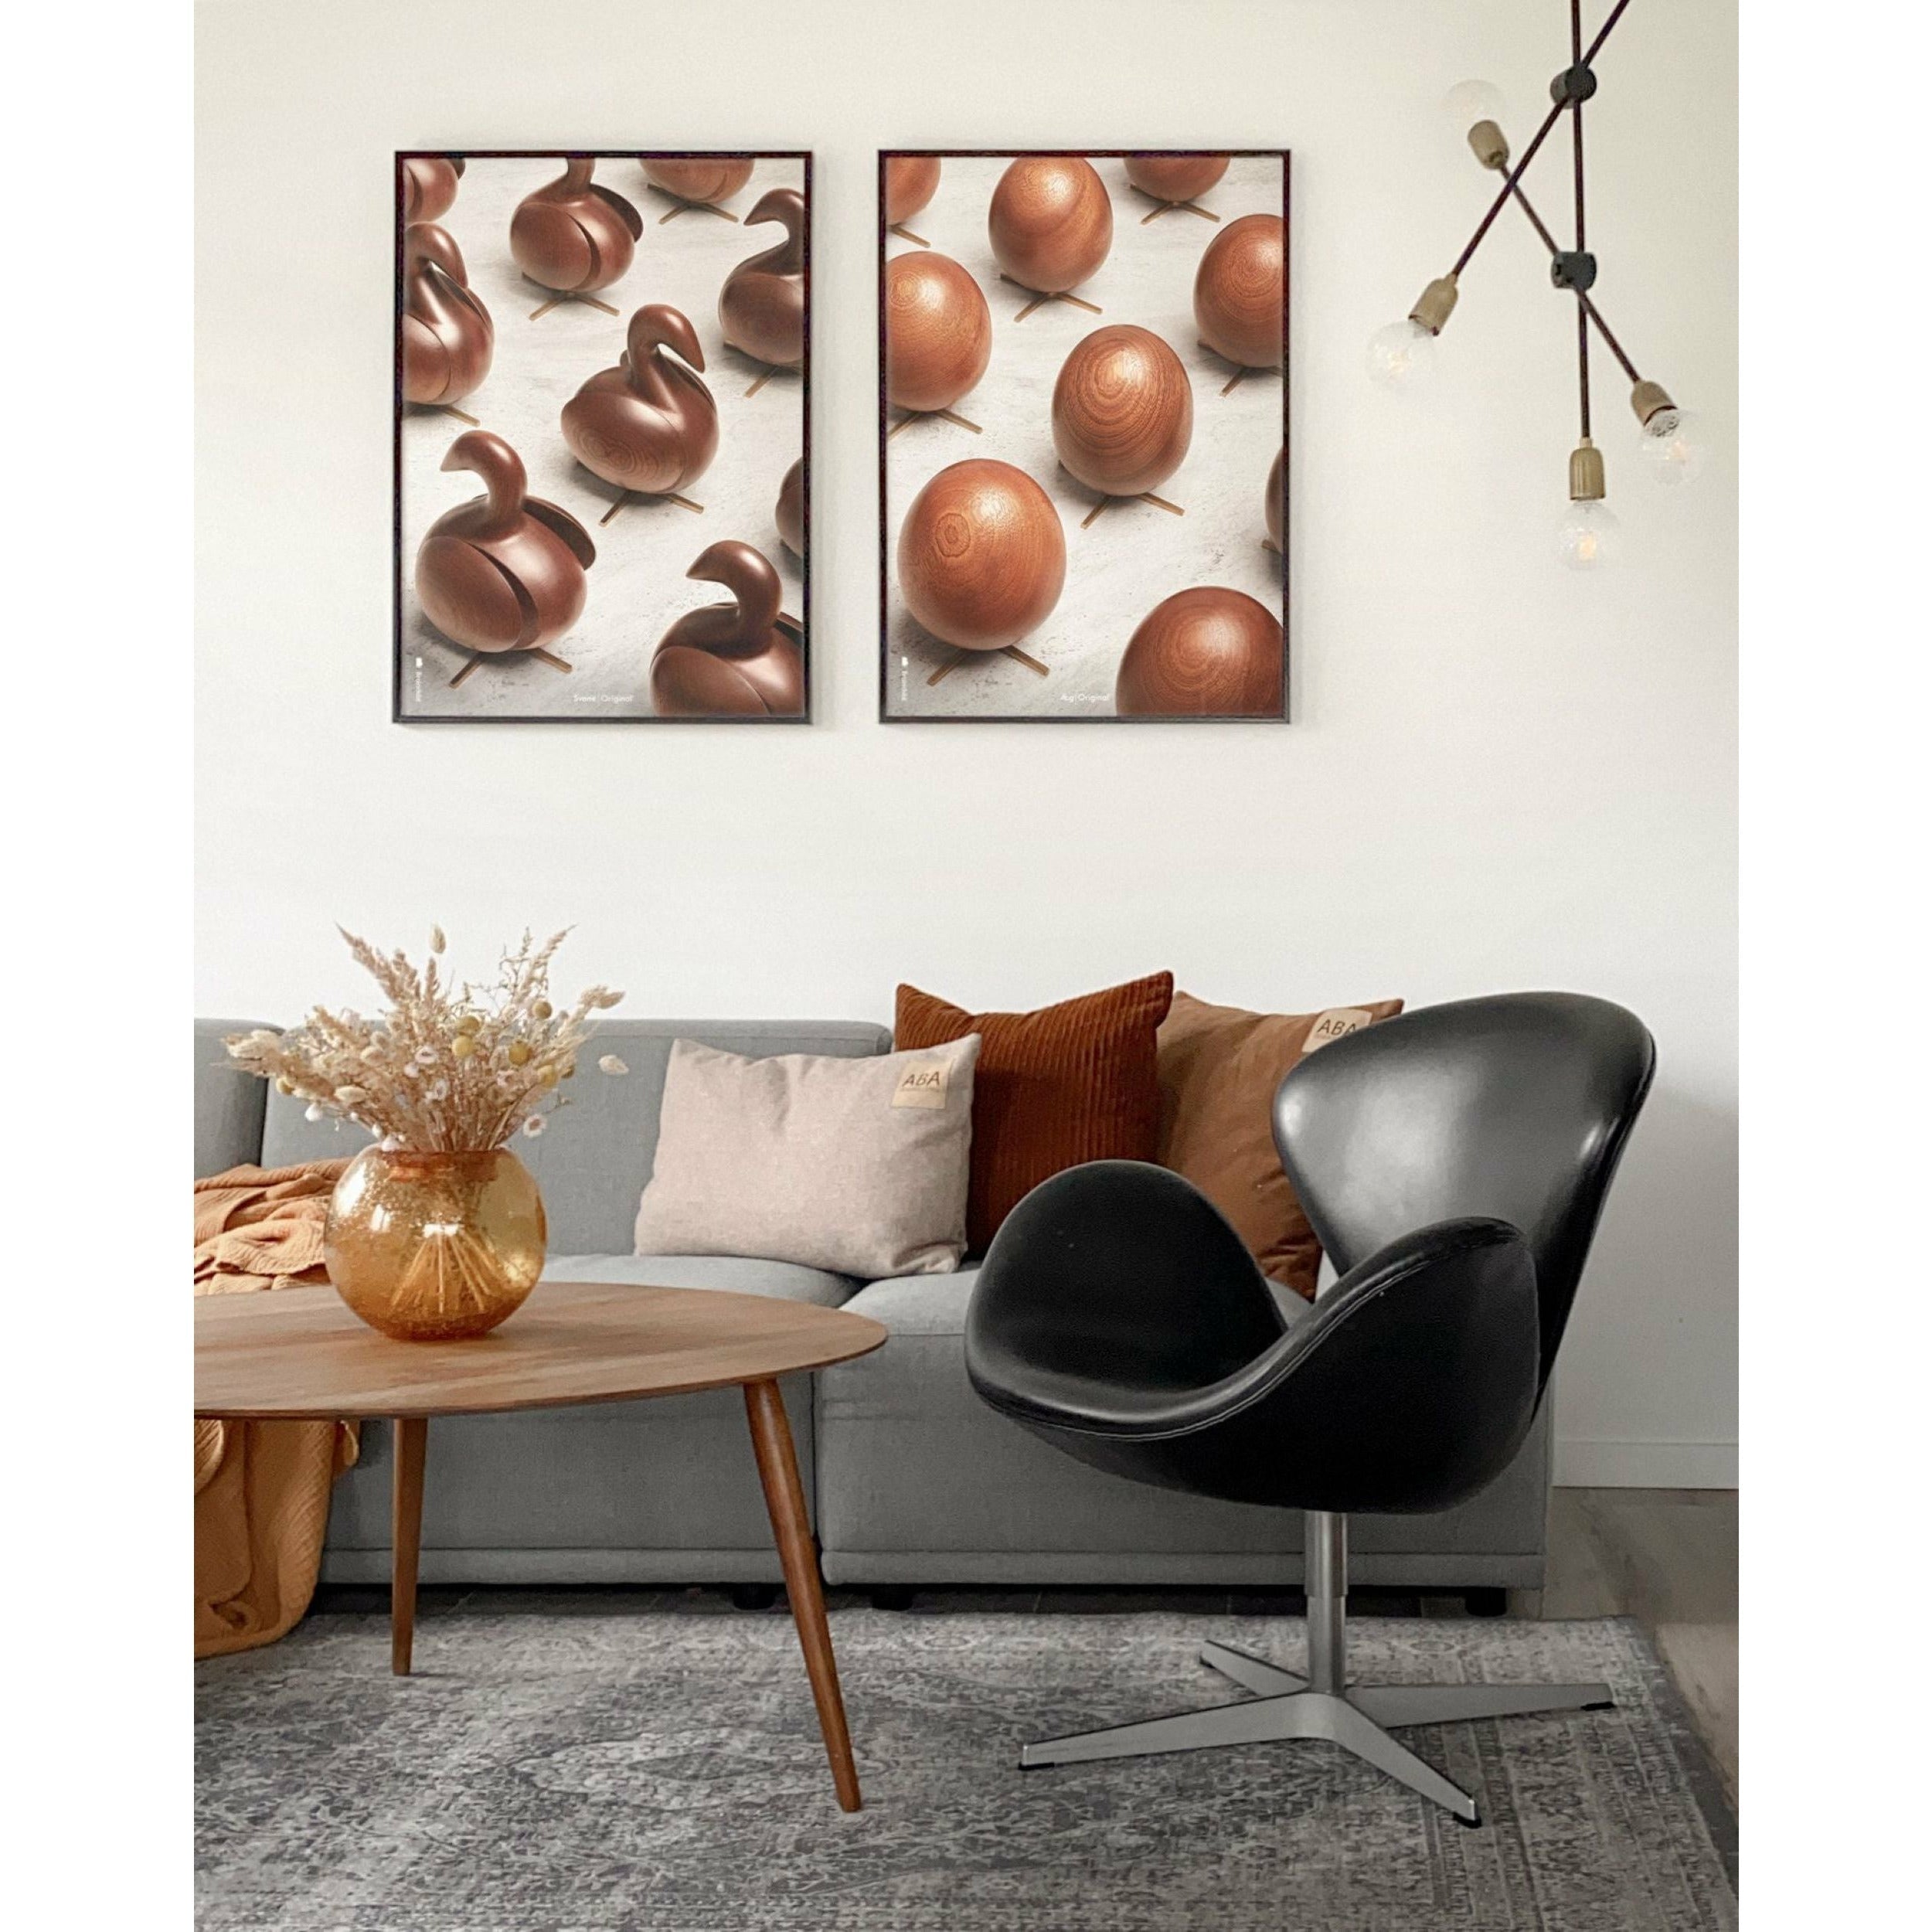 Brainchild Eierparade Poster, Rahmen aus schwarz lackiertem Holz, 70x100 Cm